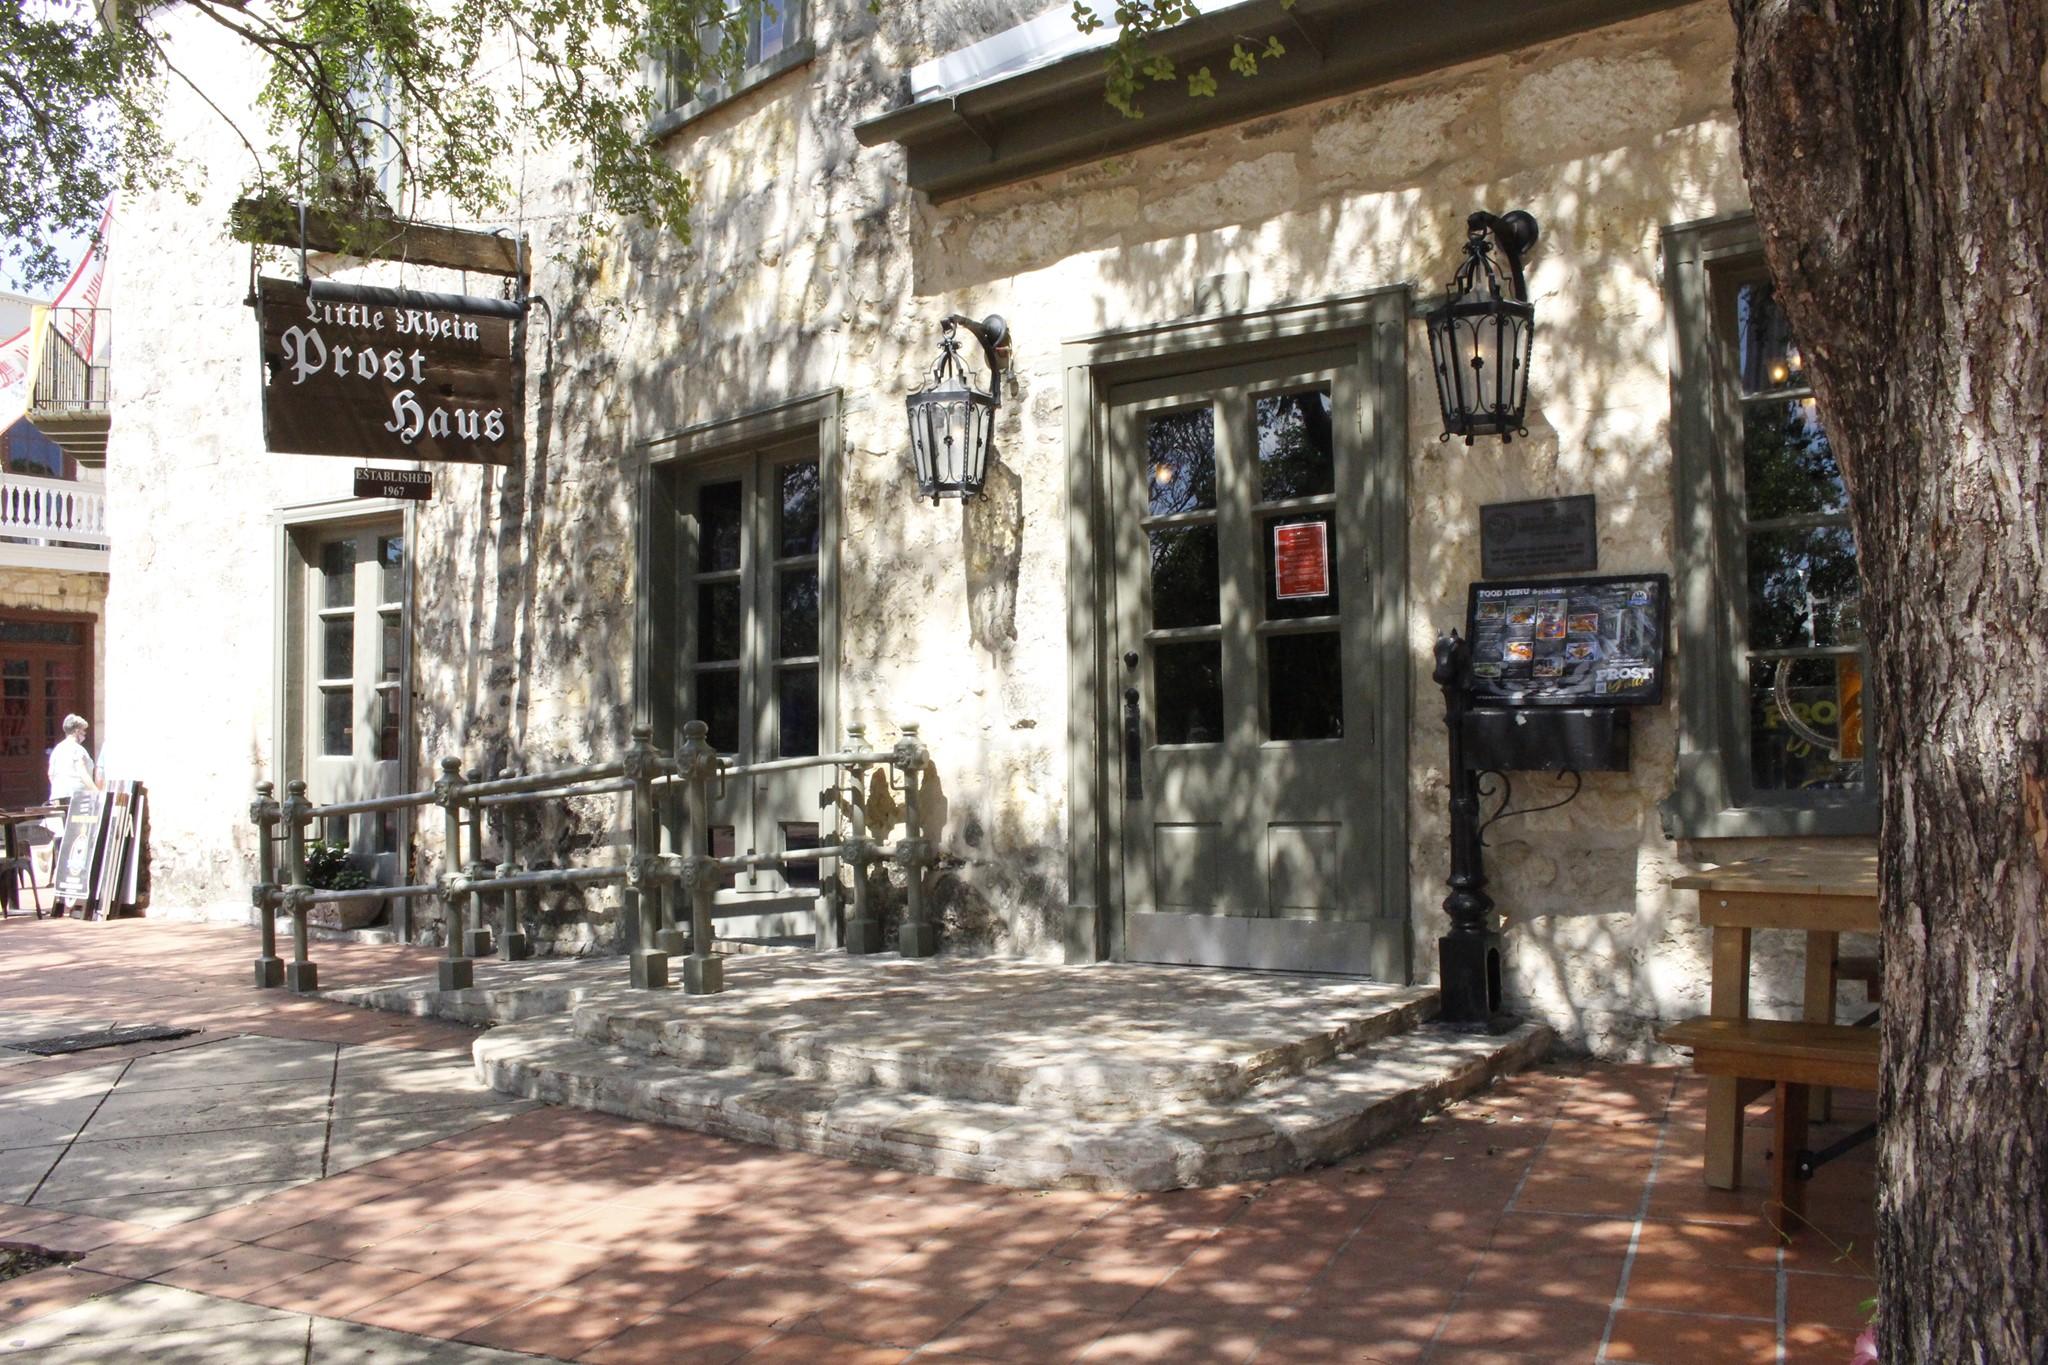 Best San Antonio Riverwalk Patio - Little Rhein Prost Haus